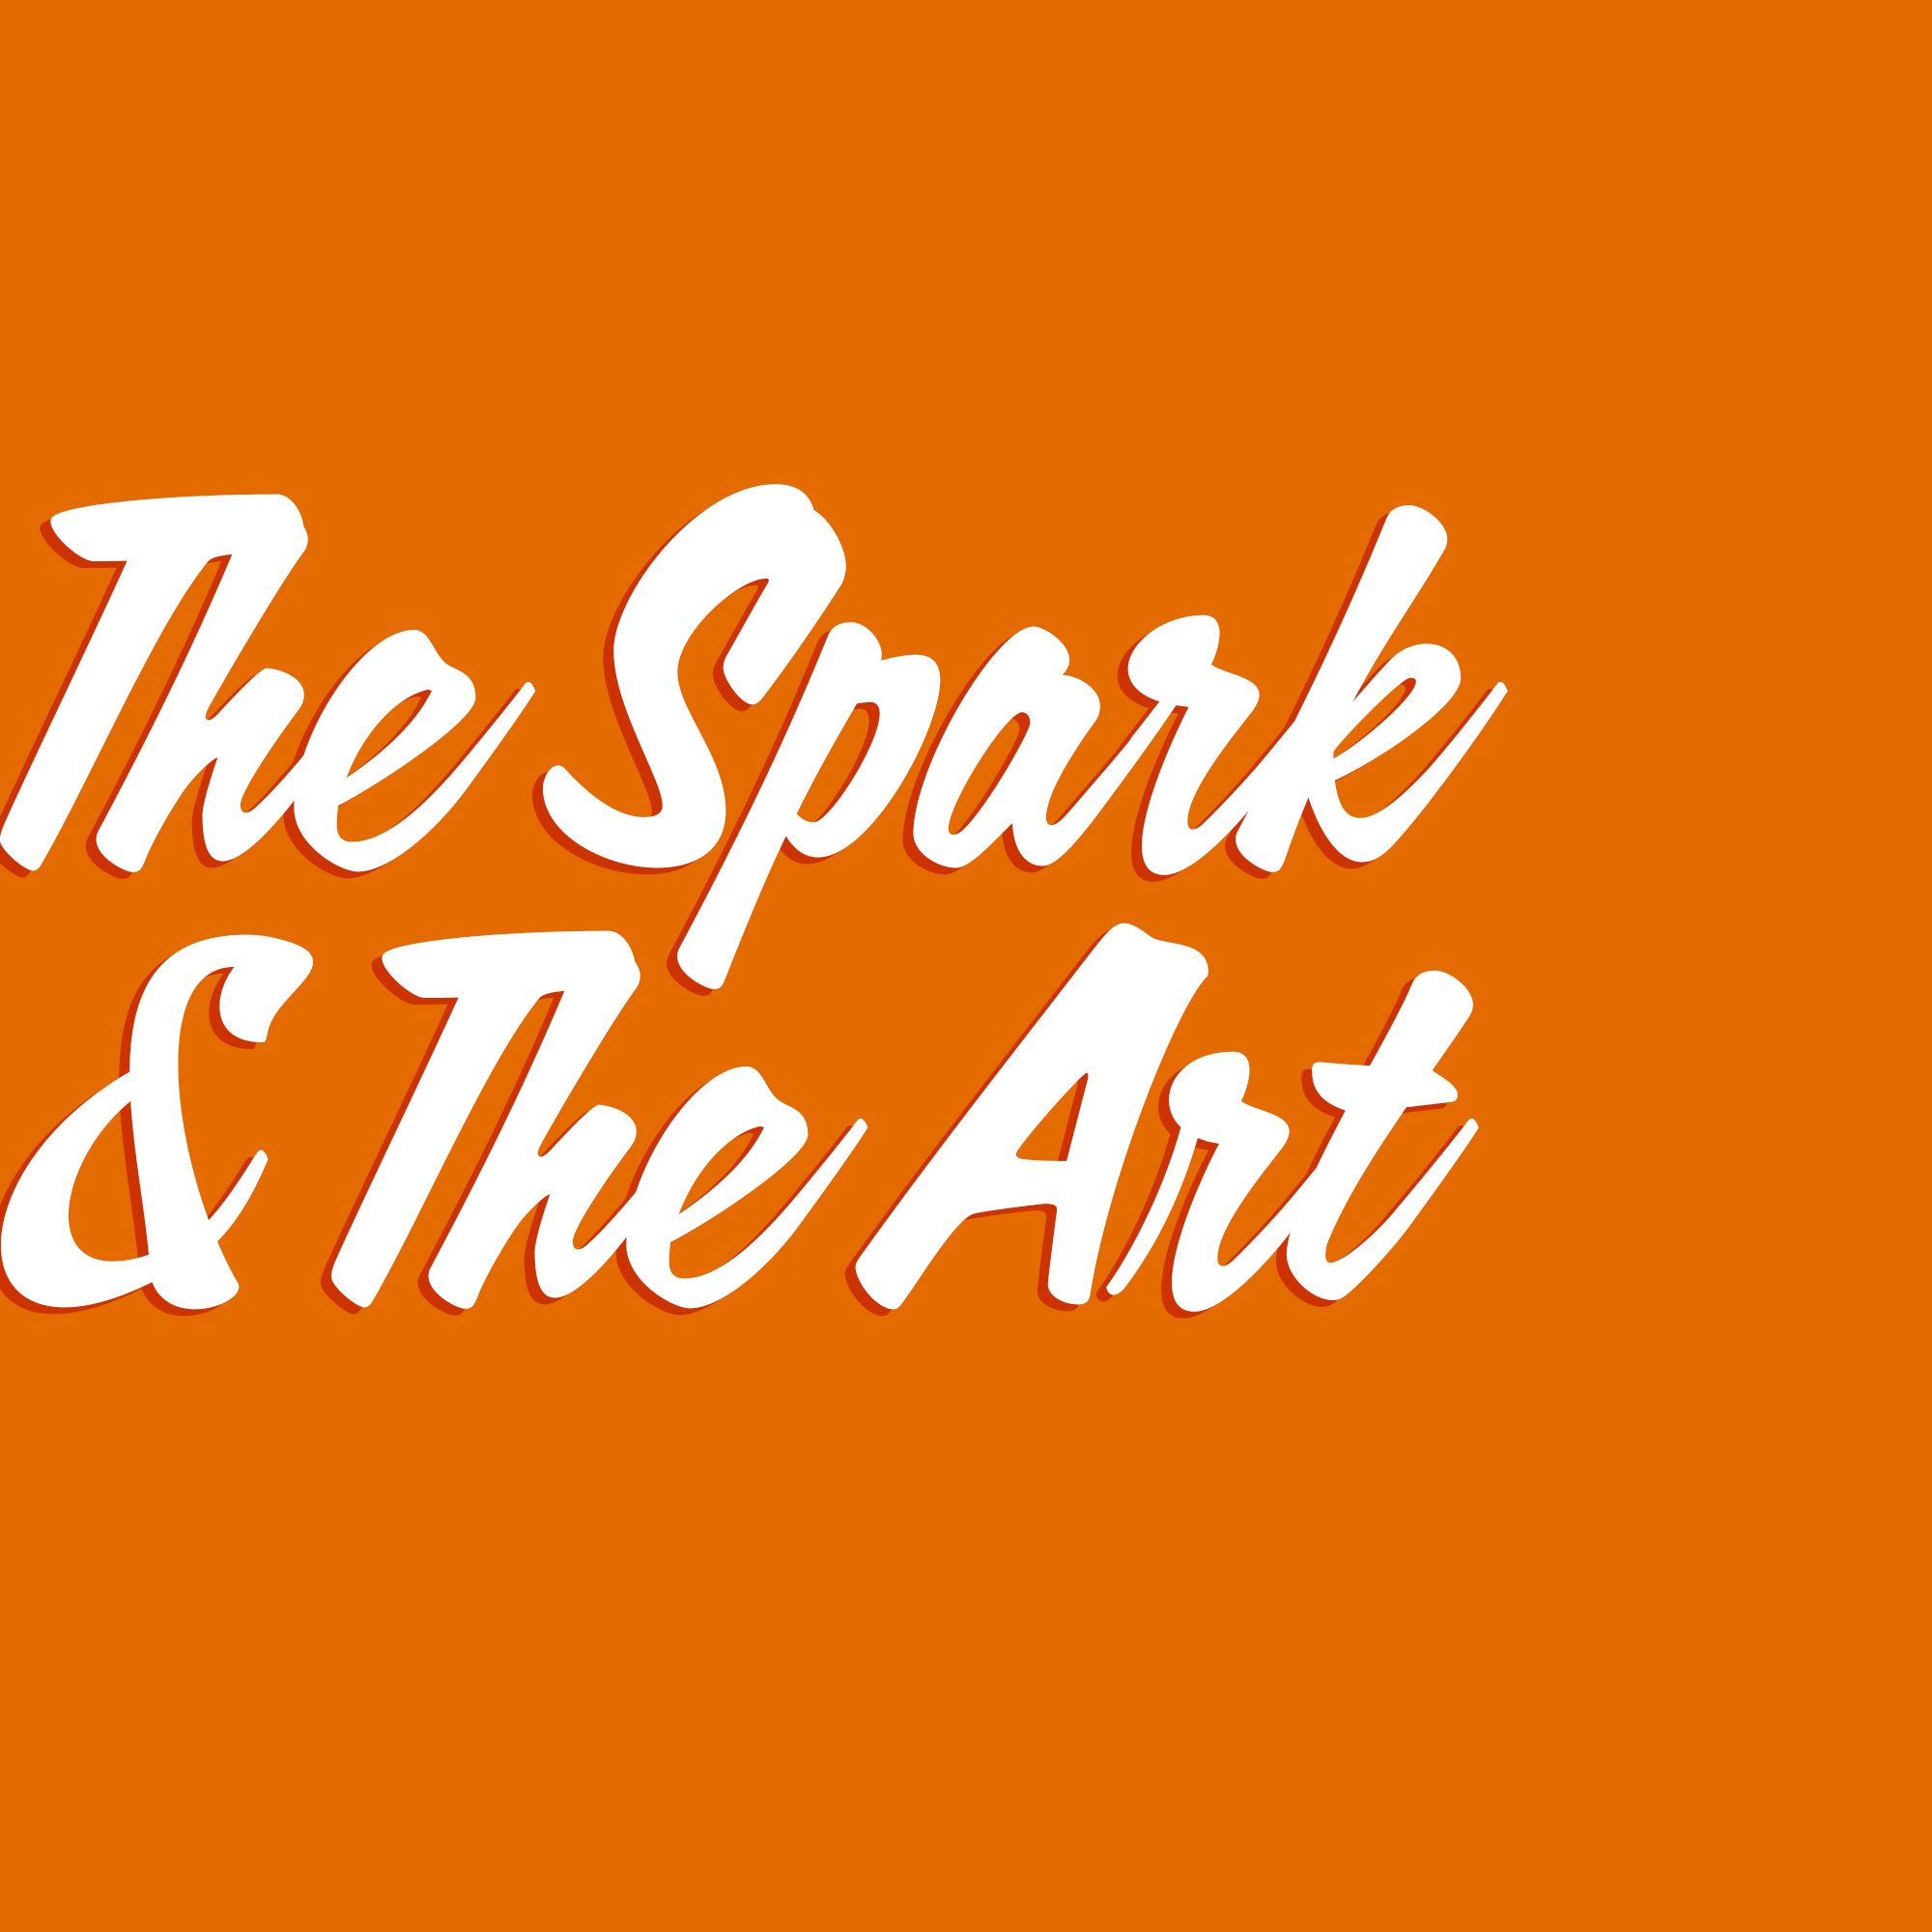 The Spark & The Art podcast logo